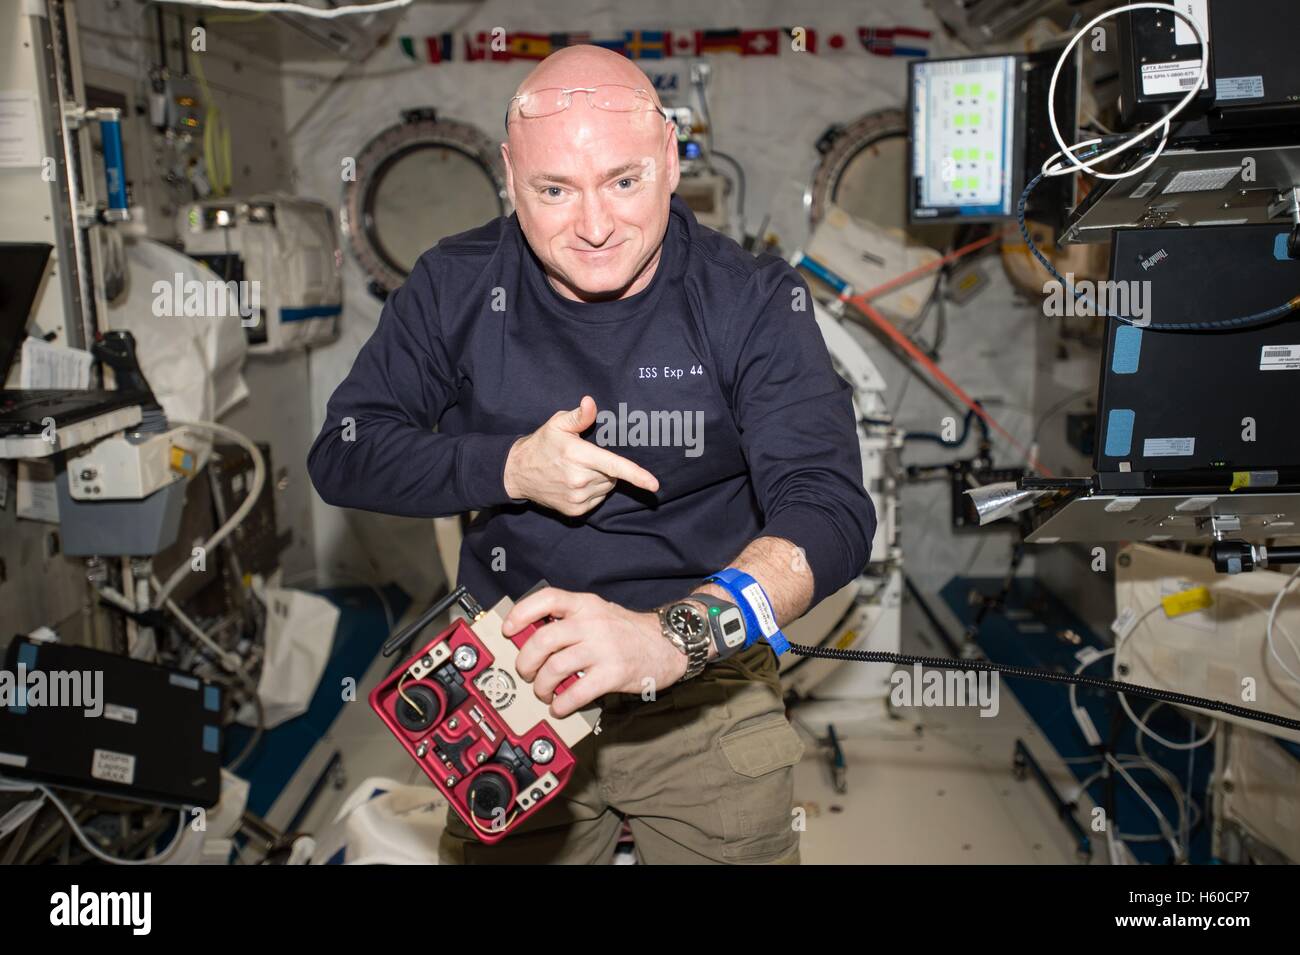 NASA internationale Raumstation ISS-Expedition 44 Mission Prime Crew Astronaut Scott Kelly betreibt einen Sphären Satelliten verwendet für Raumschiff andocken und Manöver 10. September 2015 in der Erdumlaufbahn. Stockfoto